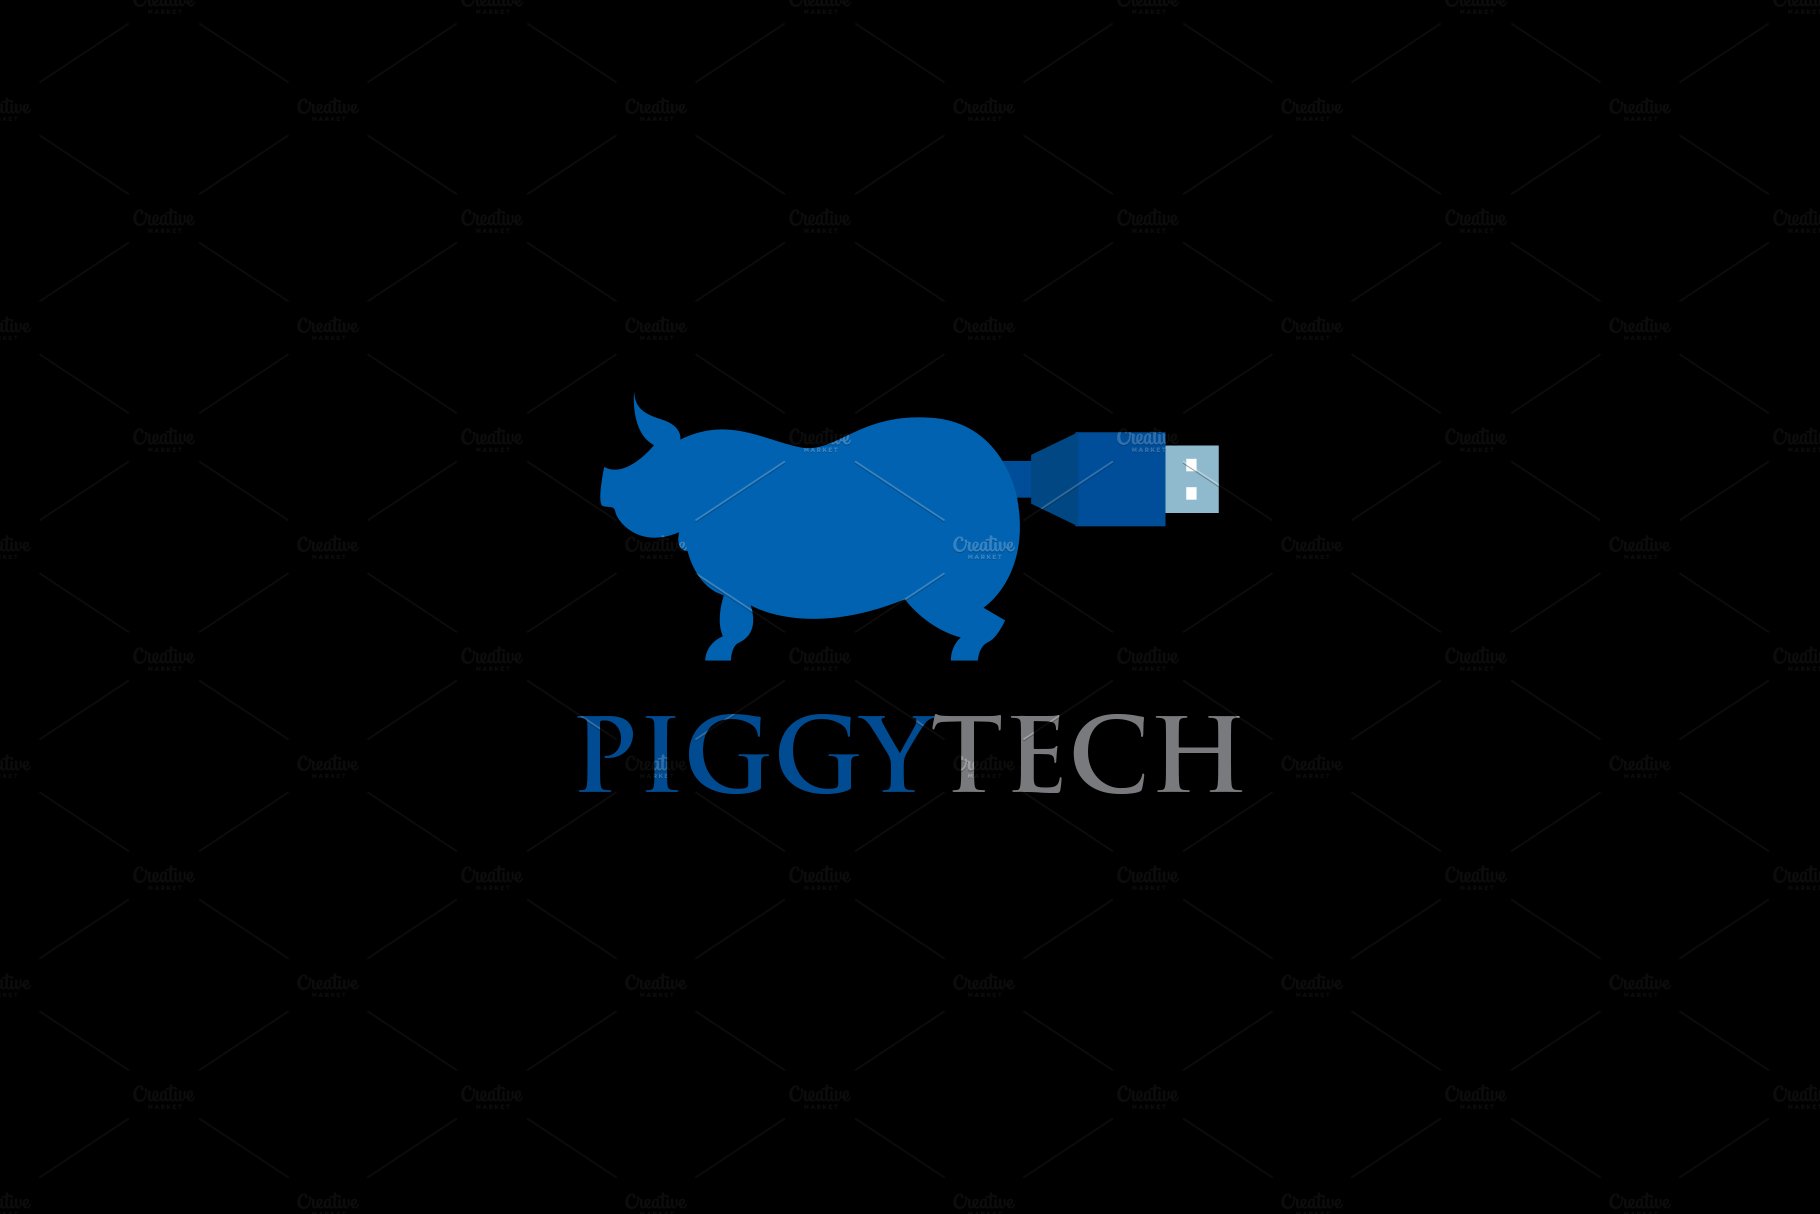 Piggy Tech Logo preview image.